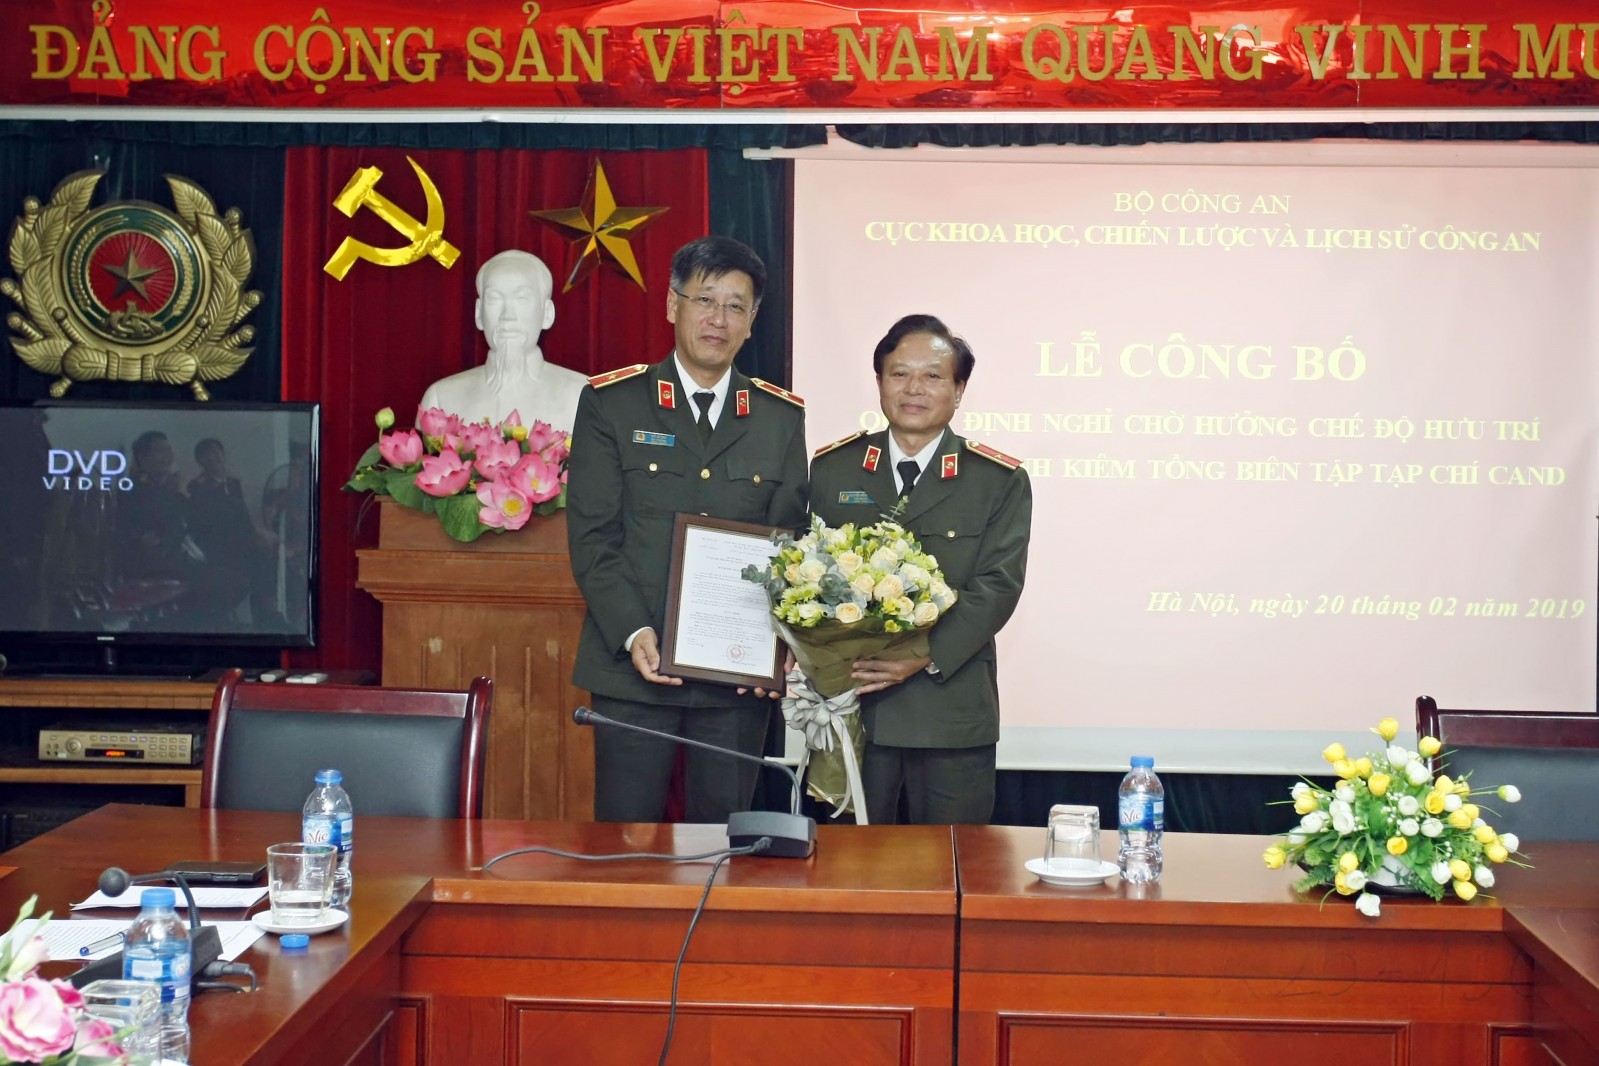 Thiếu tướng Đỗ Lê Chi trao quyết định bổ nhiệm Tổng Biên tập Tạp chí CAND cho Thiếu tướng Nguyễn Hồng Thái.